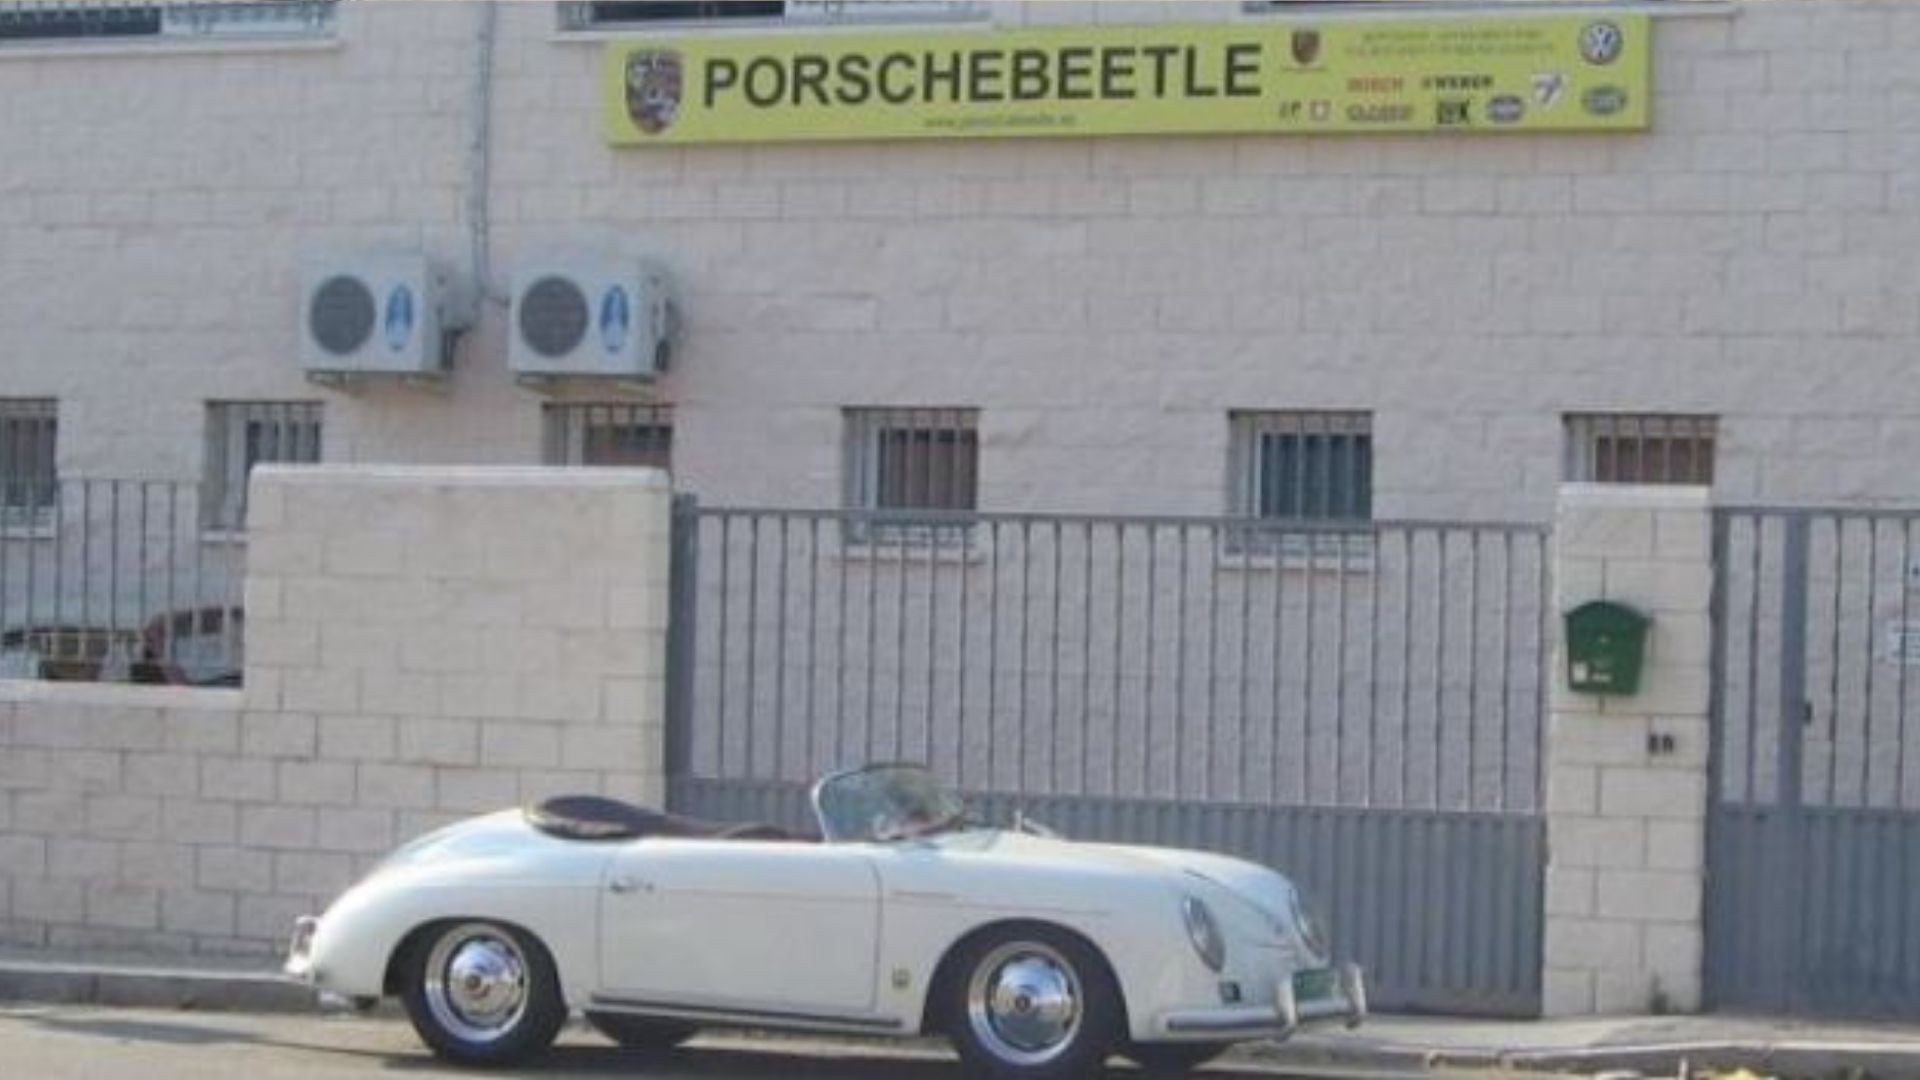 Porschebeetle